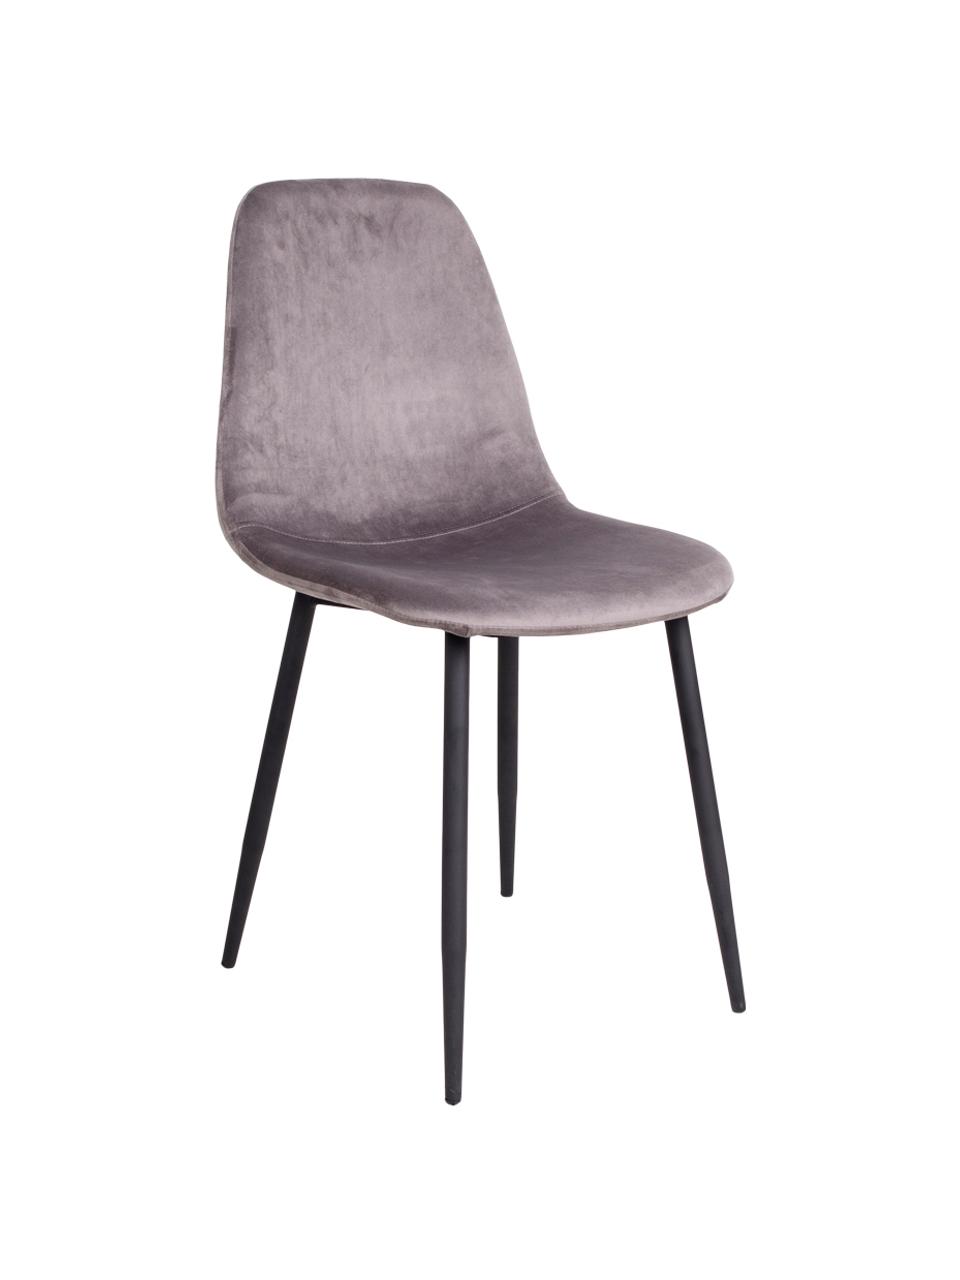 Krzesło tapicerowane z aksamitu Stockholm, Tapicerka: aksamit Dzięki tkaninie w, Nogi: metal lakierowany, Szary, S 50 x G 47 cm